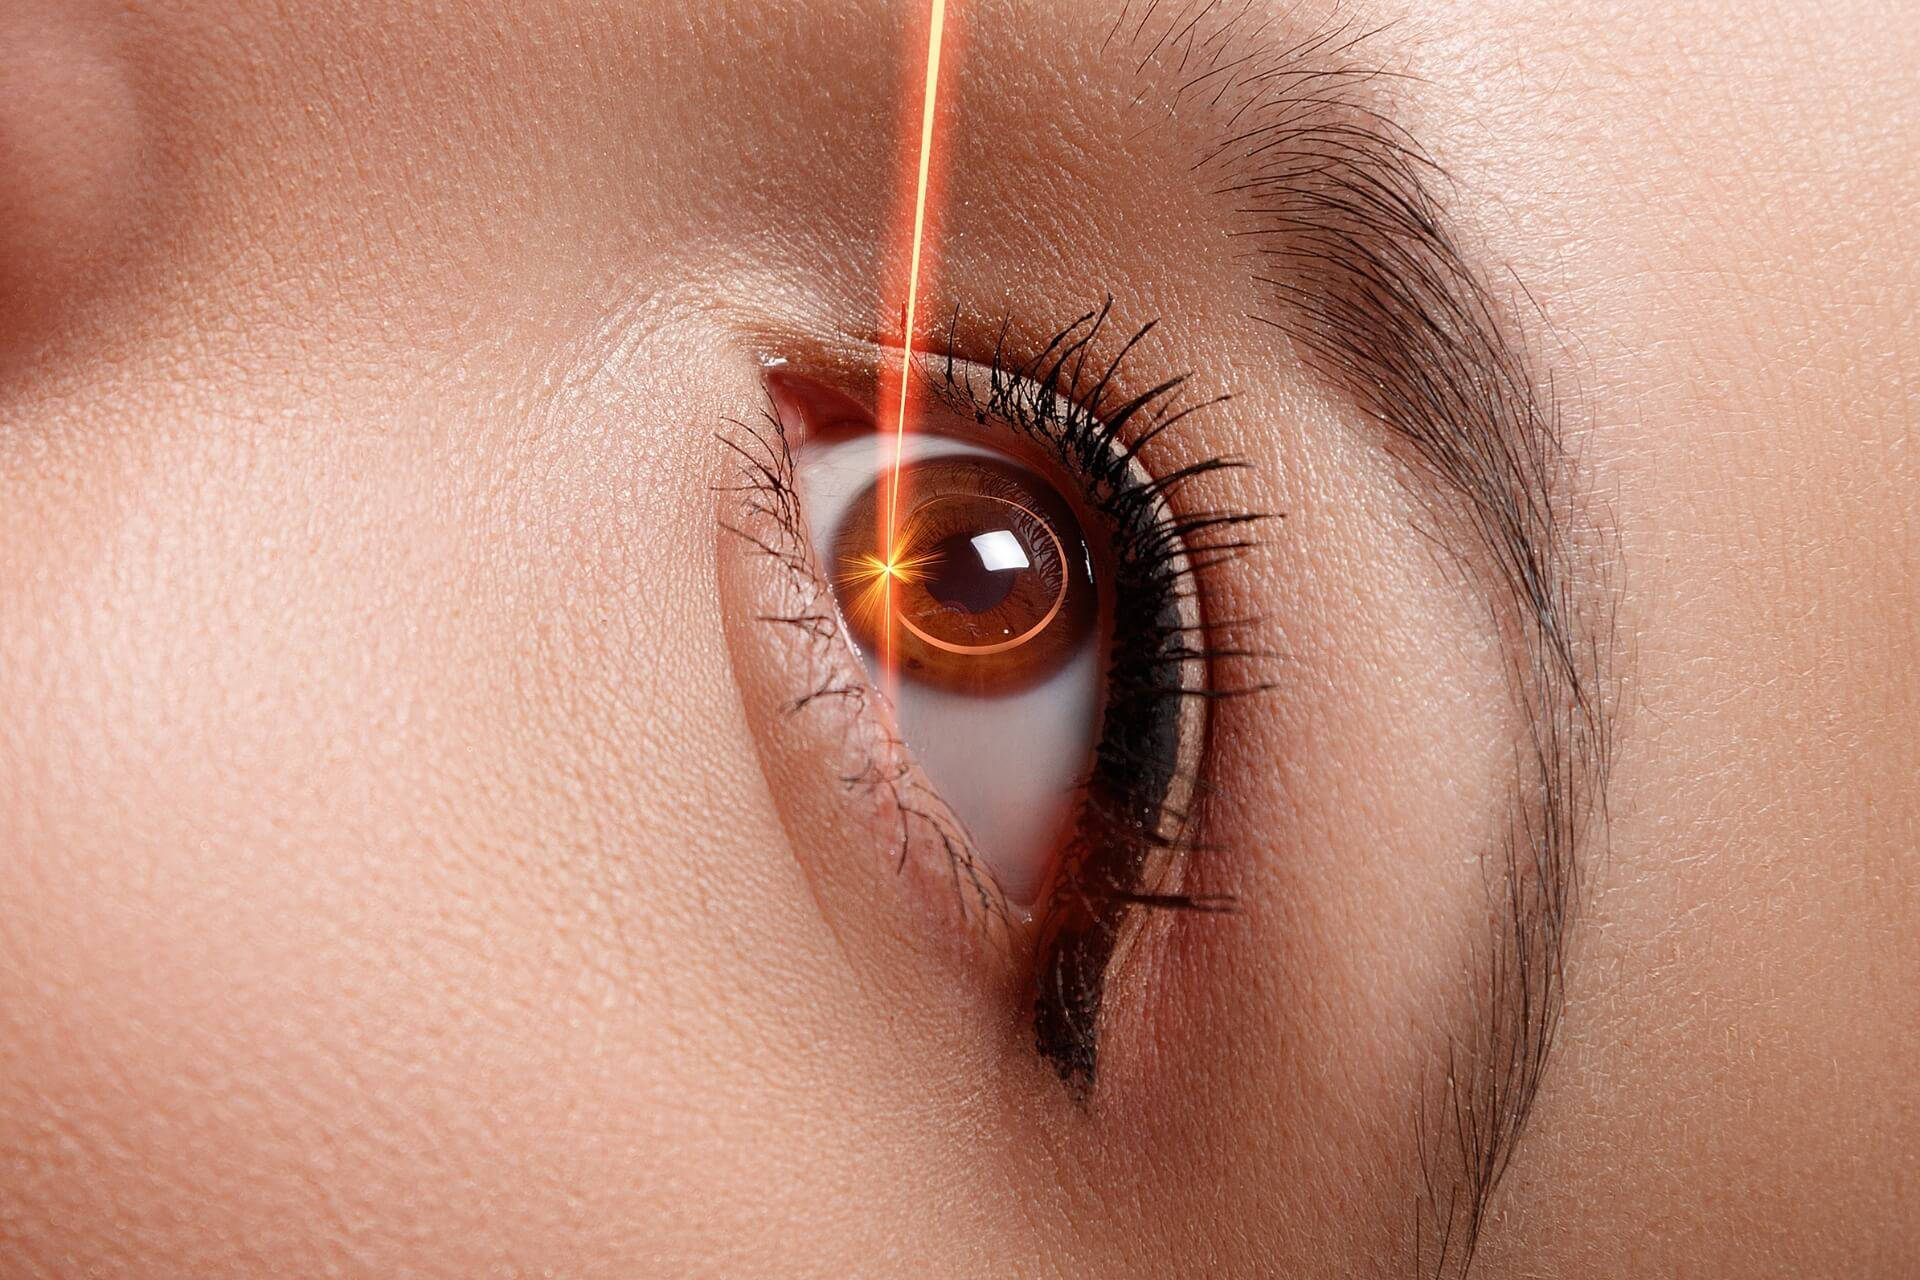 laser-miopia-occhi-correzione-difetti-vista-operazione-intervento-oculistica.jpg